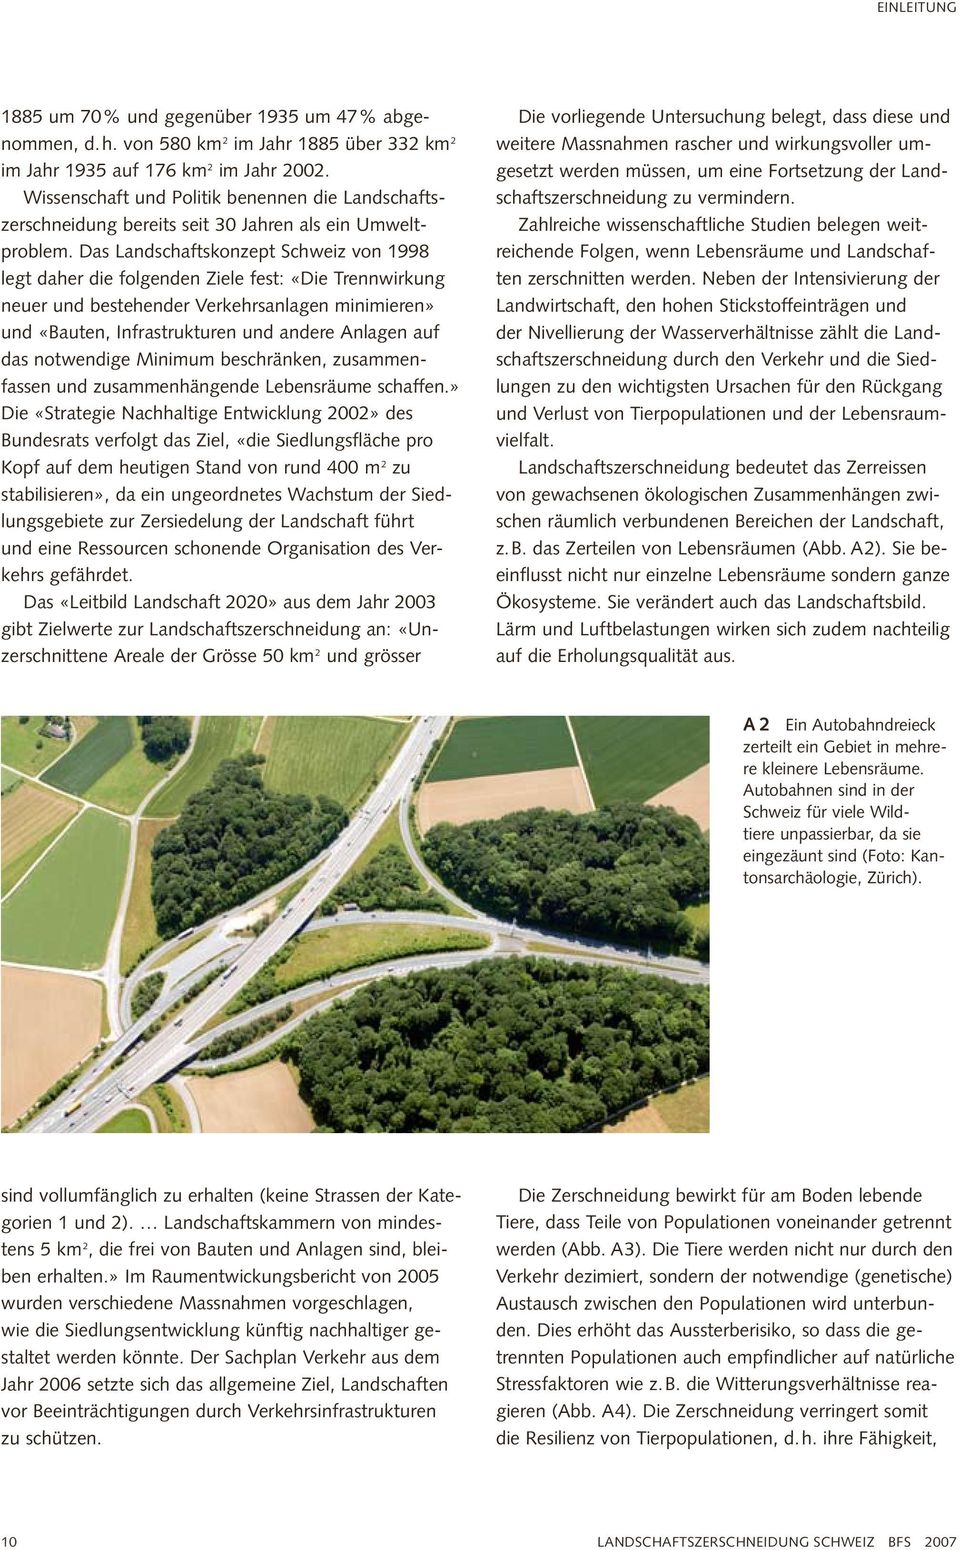 Das Landschaftskonzept Schweiz von 1998 legt daher die folgenden Ziele fest: «Die Trennwirkung neuer und bestehender Verkehrsanlagen minimieren» und «Bauten, Infrastrukturen und andere Anlagen auf